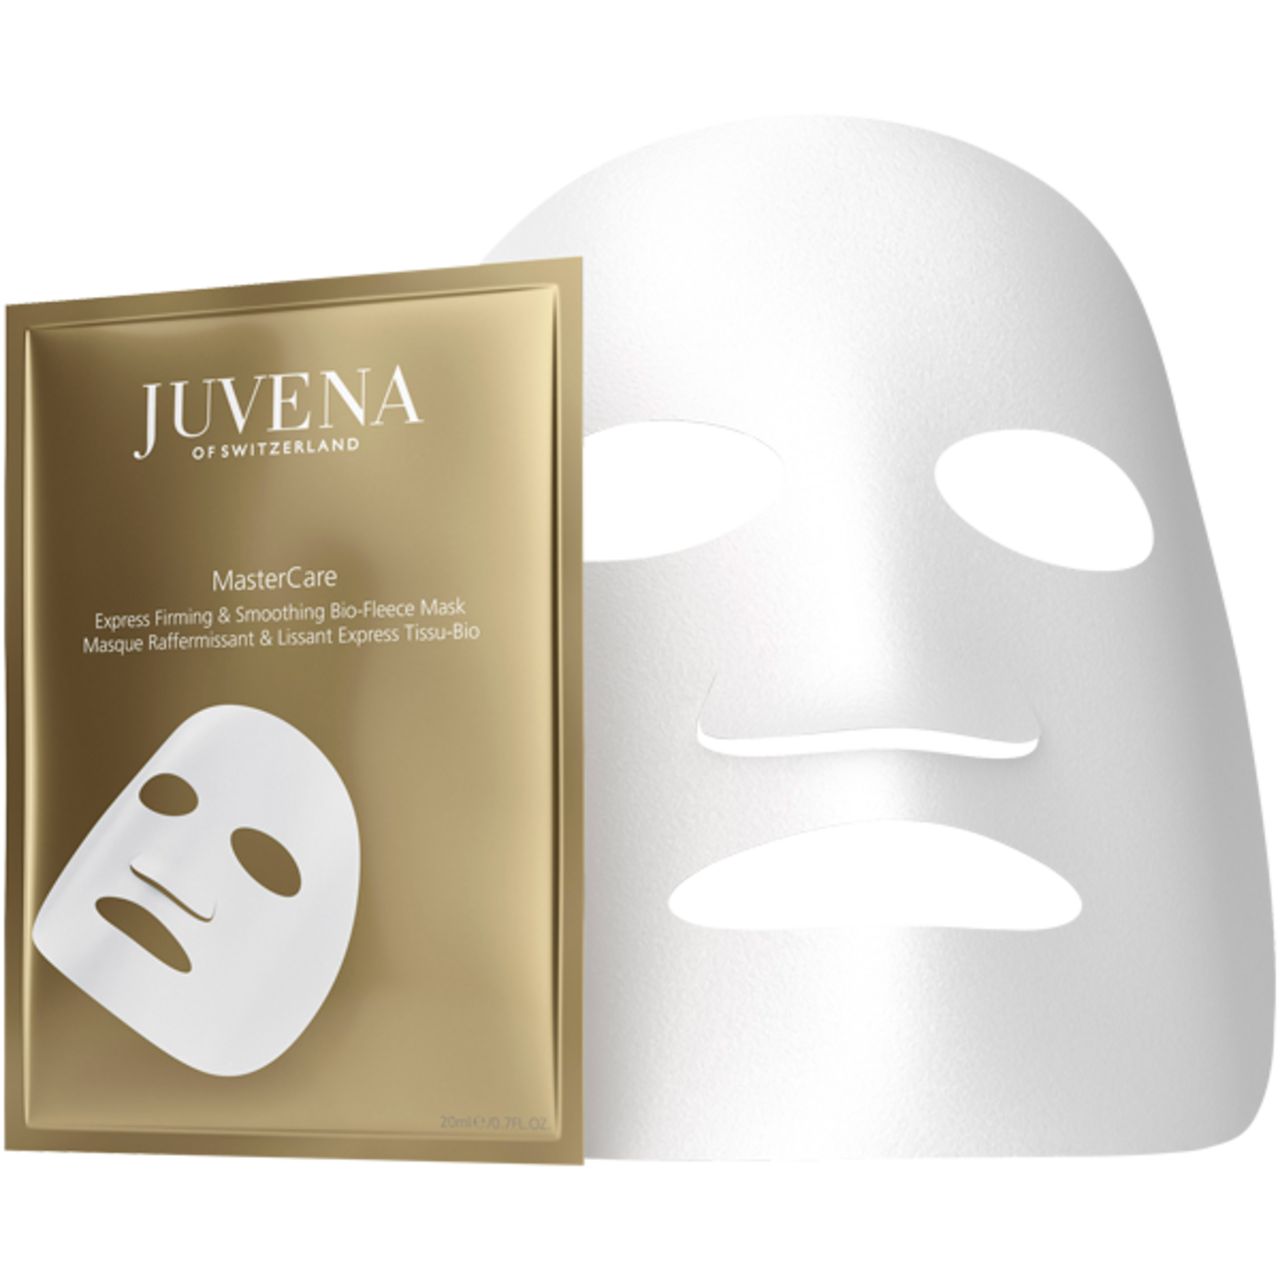 Juvena, Master Care Express Firming & Smoothing Bio-Fleece Mask